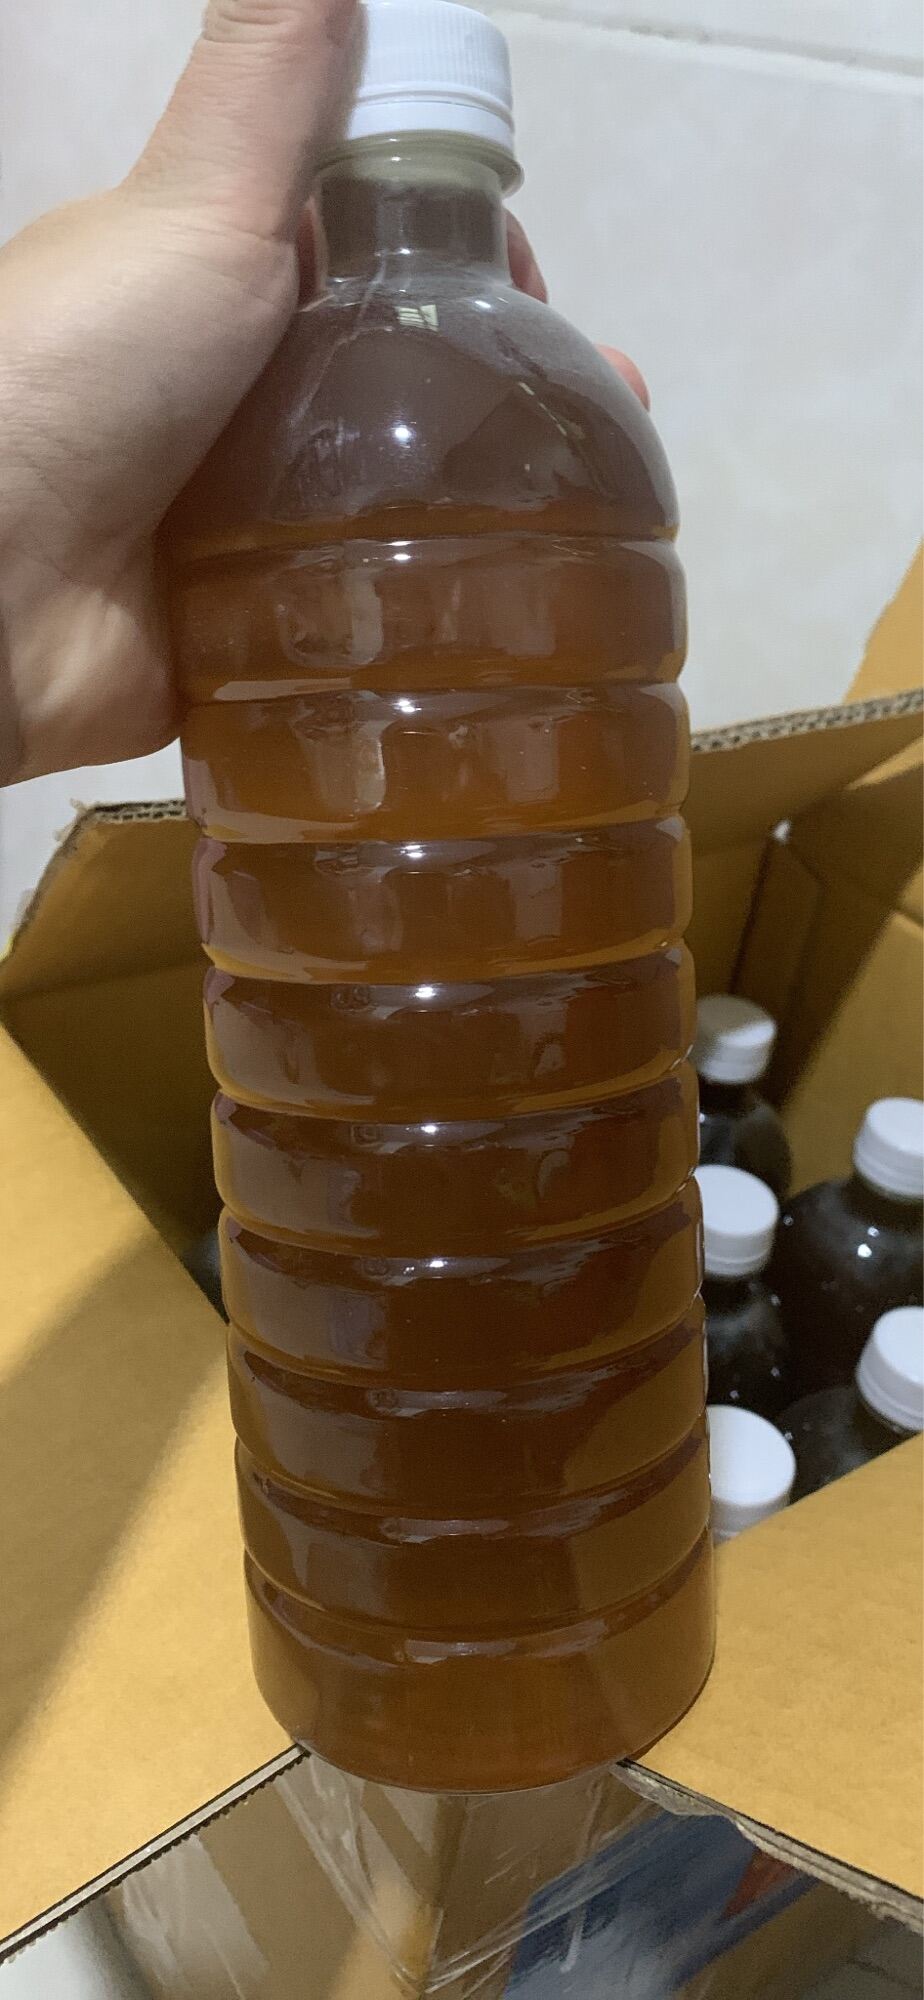 Sale 1 lit mật ong DakLak nguyên chất nhà làm